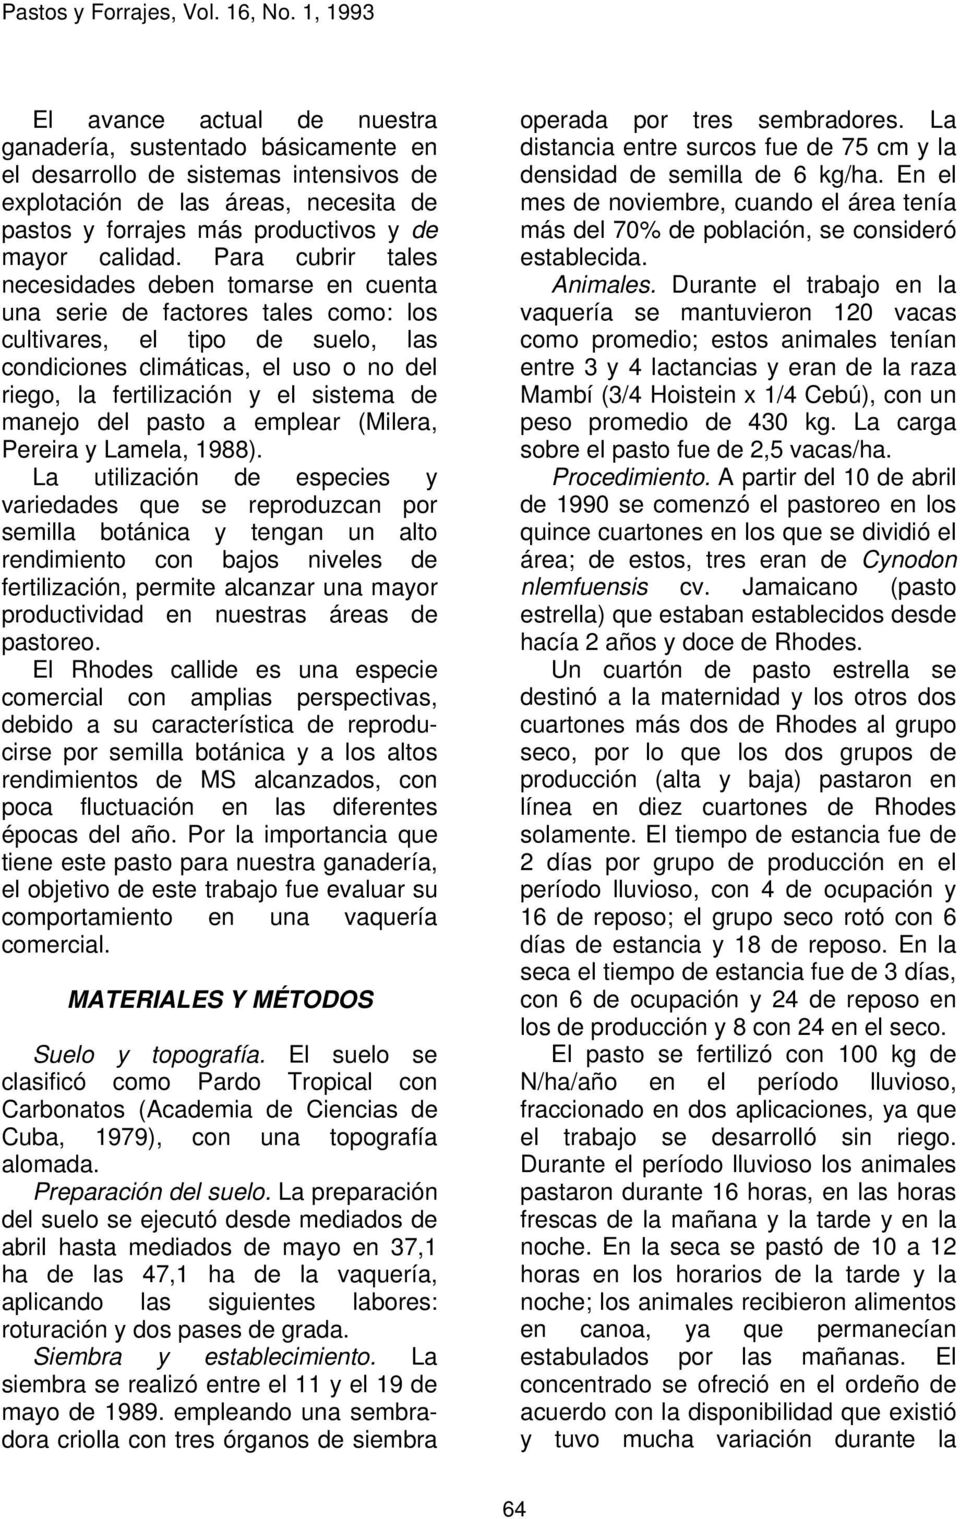 sistema de manejo del pasto a emplear (Milera, Pereira y Lamela, 1988).